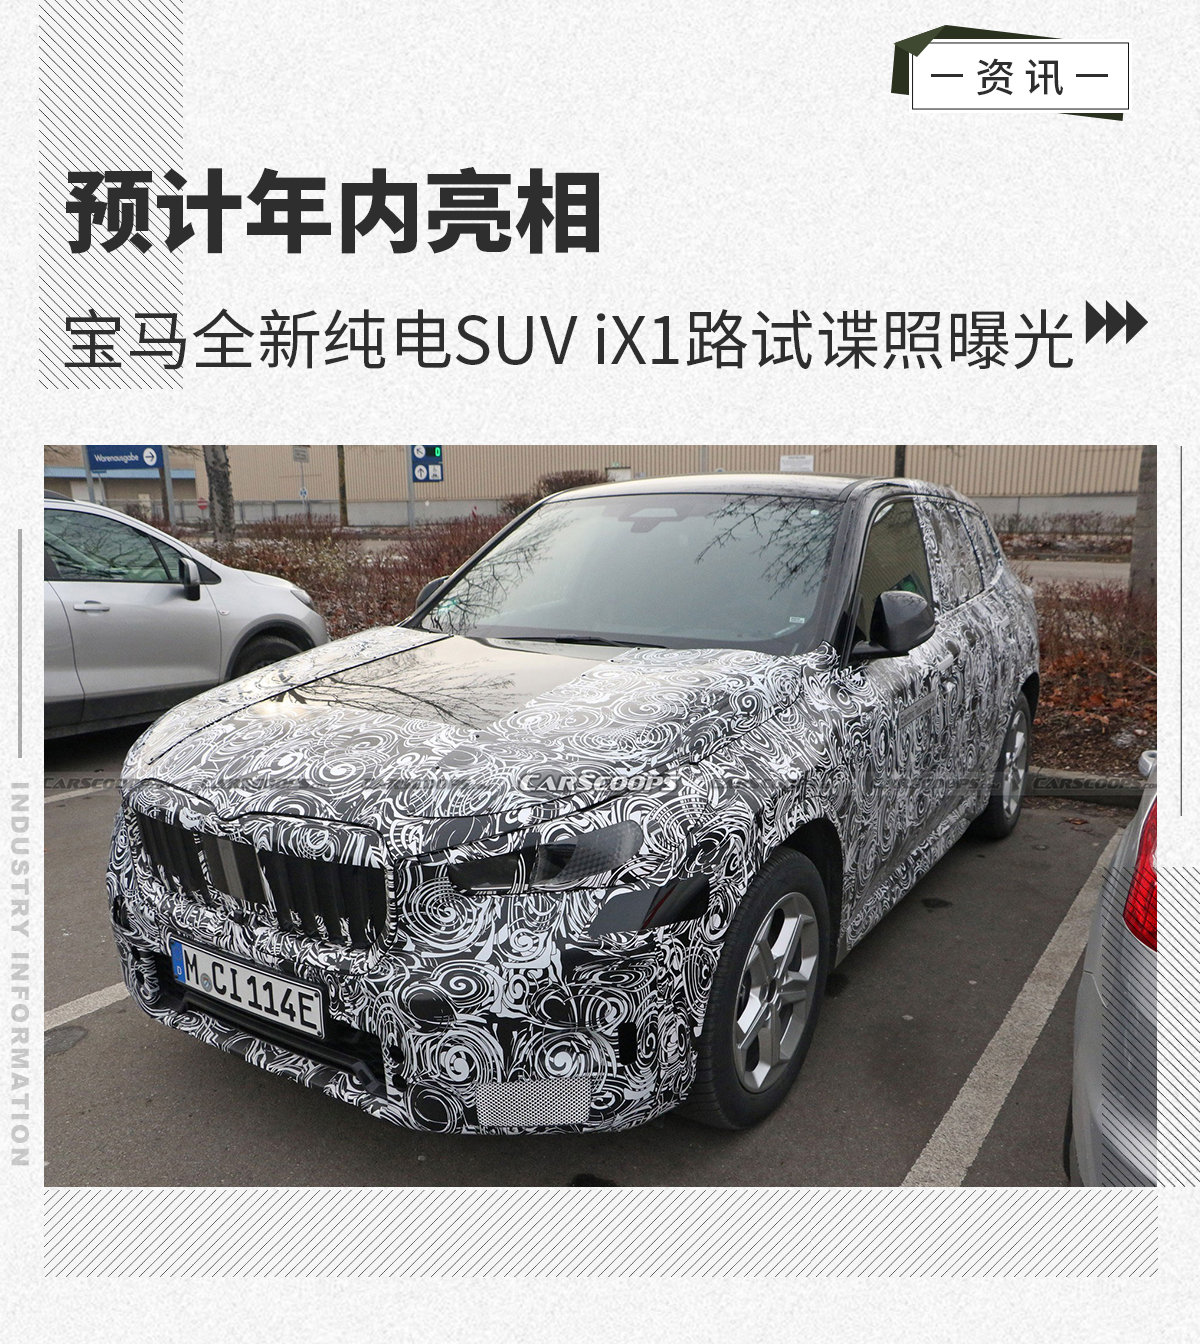 预计年内亮相 宝马全新纯电SUV iX1路试谍照曝光